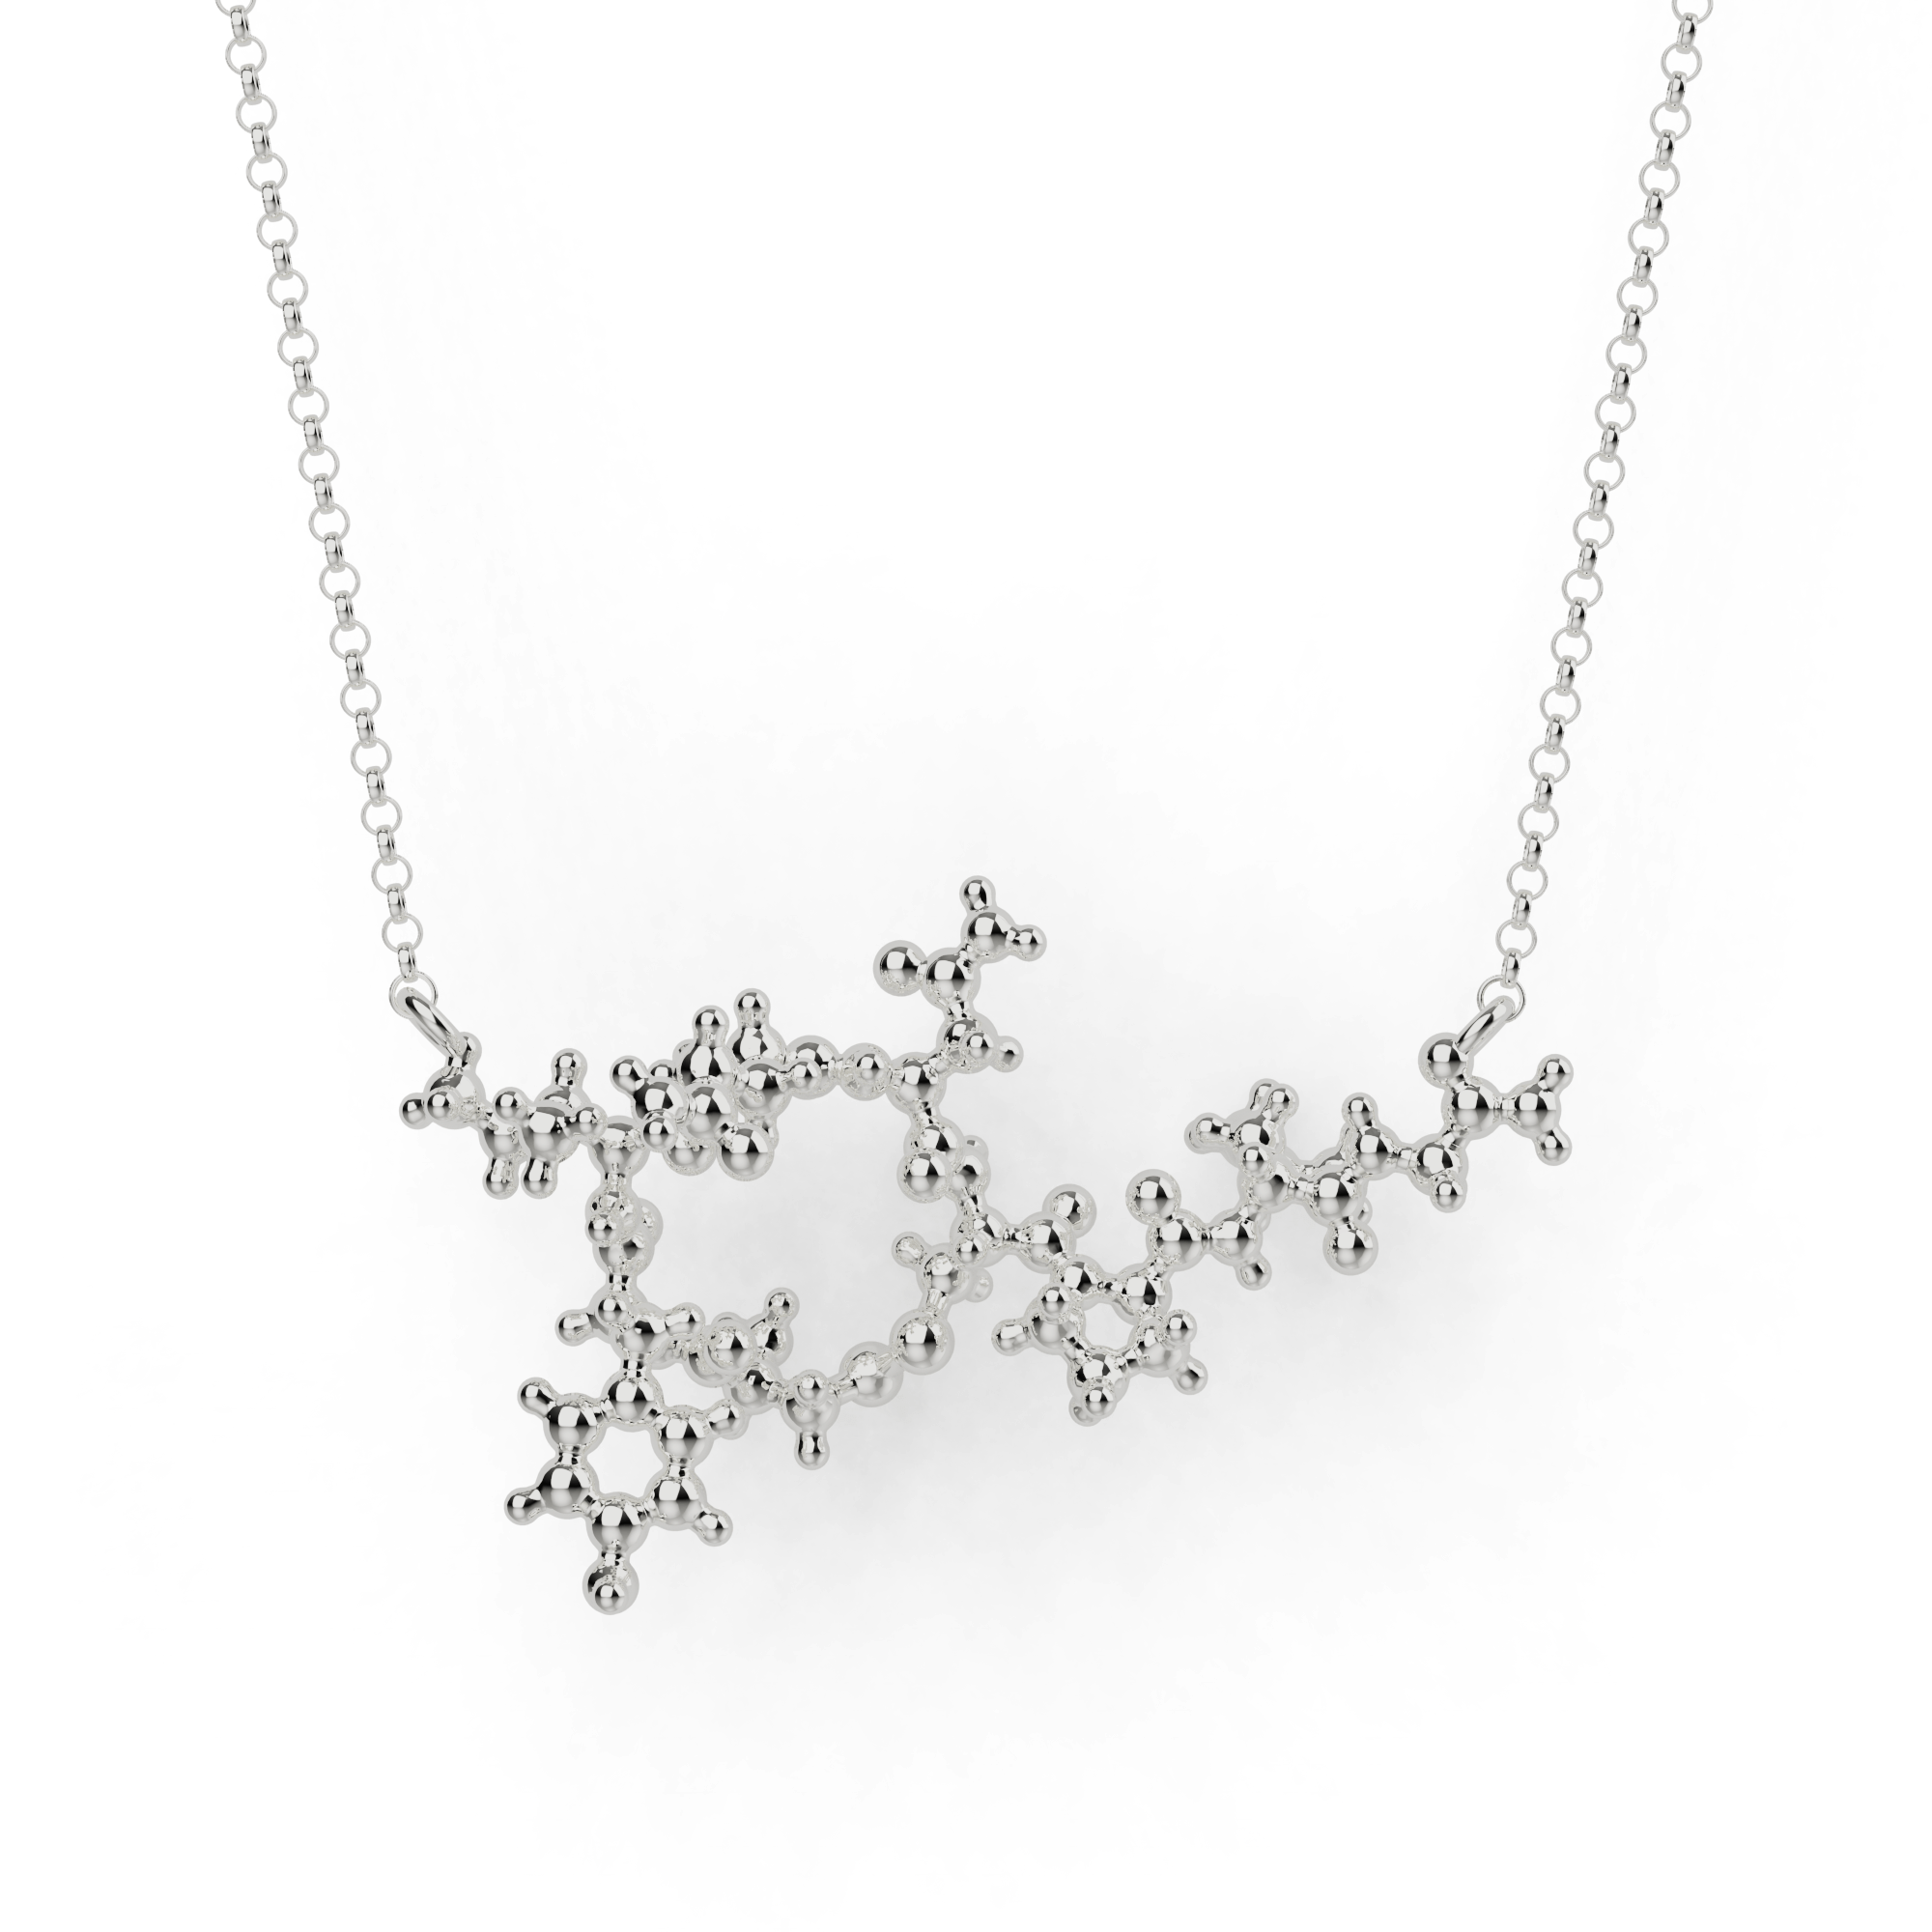 oxytocin necklace 3D | silver